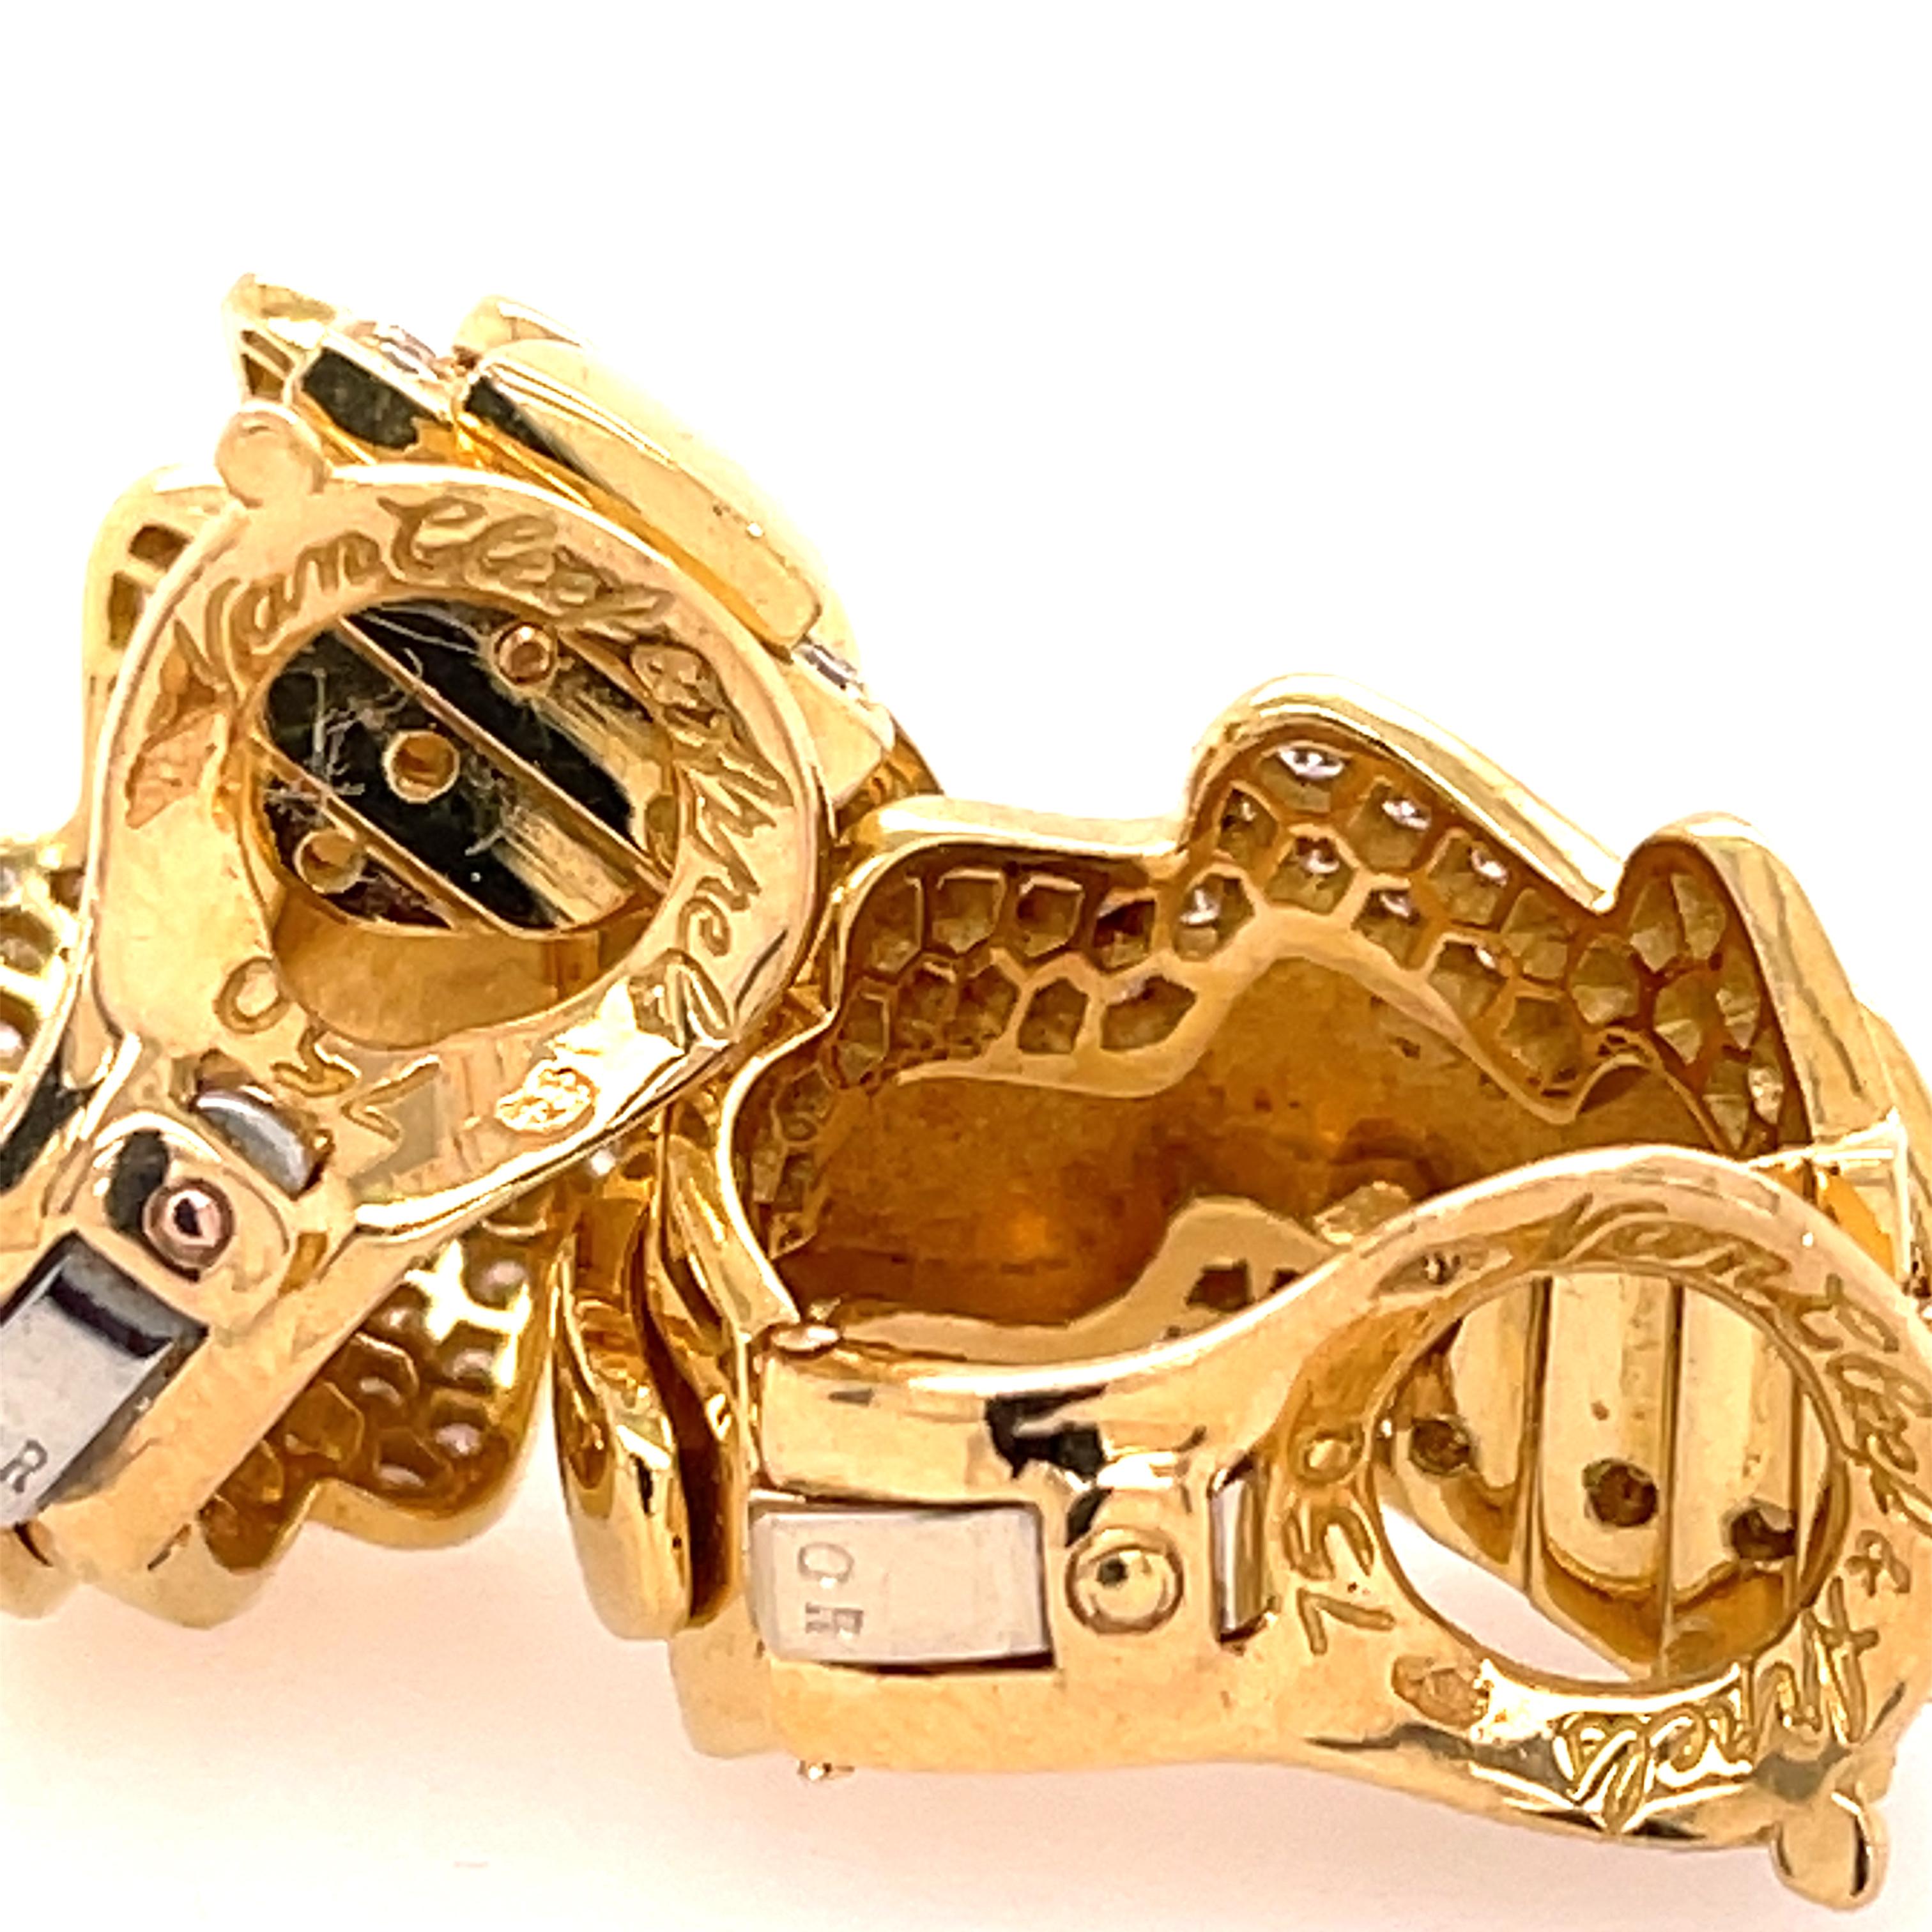 Van Cleef & Arpels diamond hoops in 18K yellow gold. Stamped Van Cleef & Arpels 750.